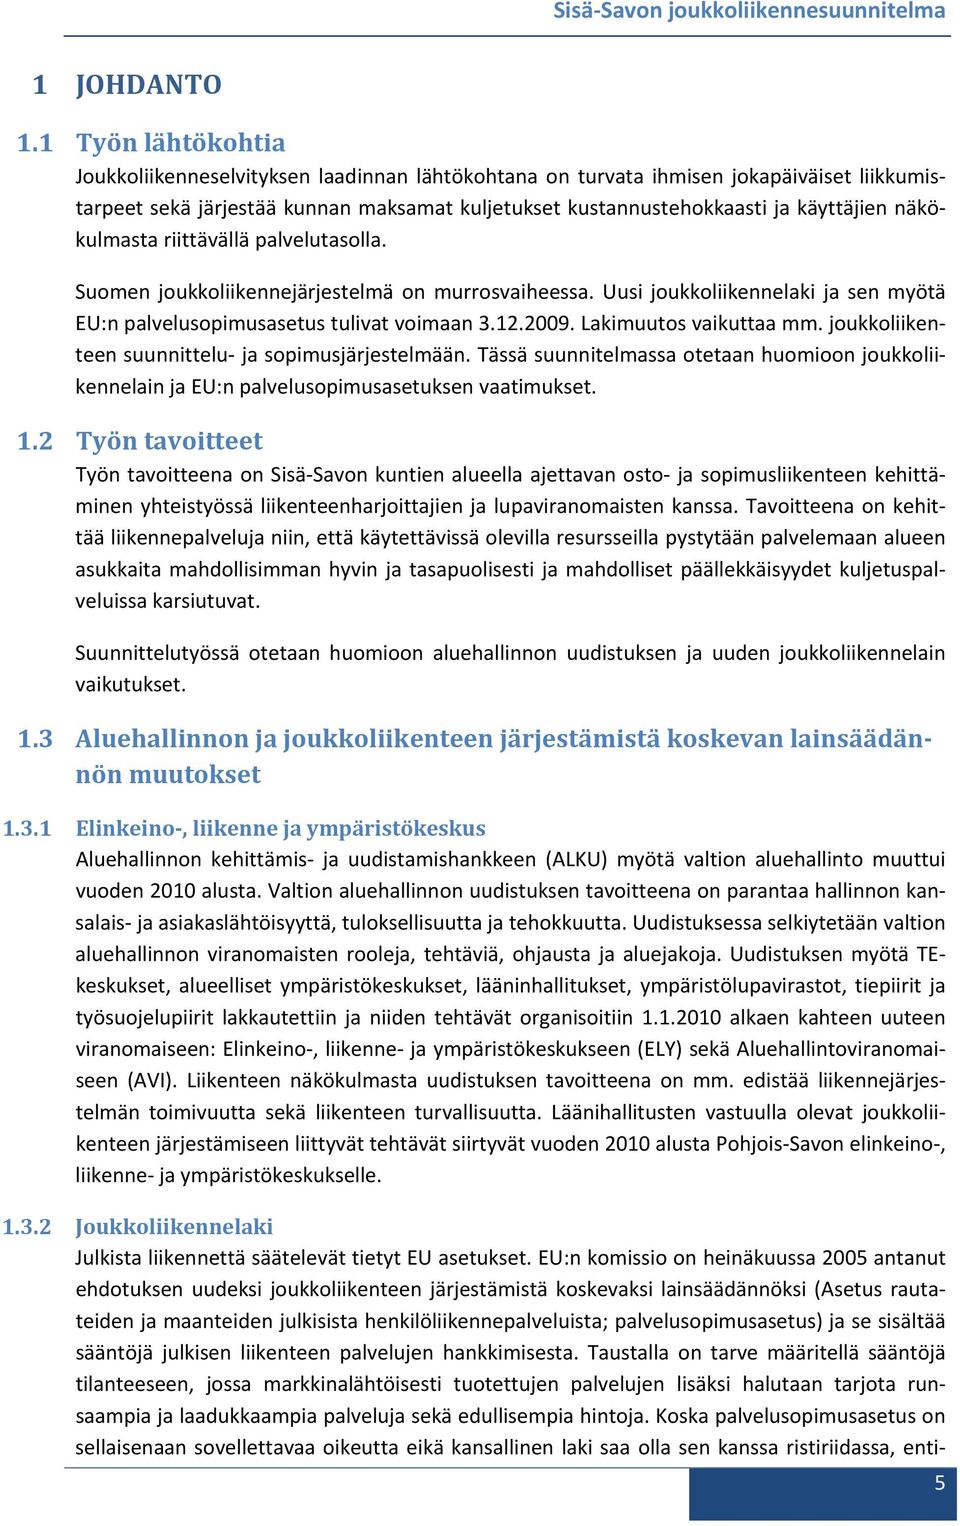 näkökulmasta riittävällä palvelutasolla. Suomen joukkoliikennejärjestelmä on murrosvaiheessa. Uusi joukkoliikennelaki ja sen myötä EU:n palvelusopimusasetus tulivat voimaan 3.12.2009.